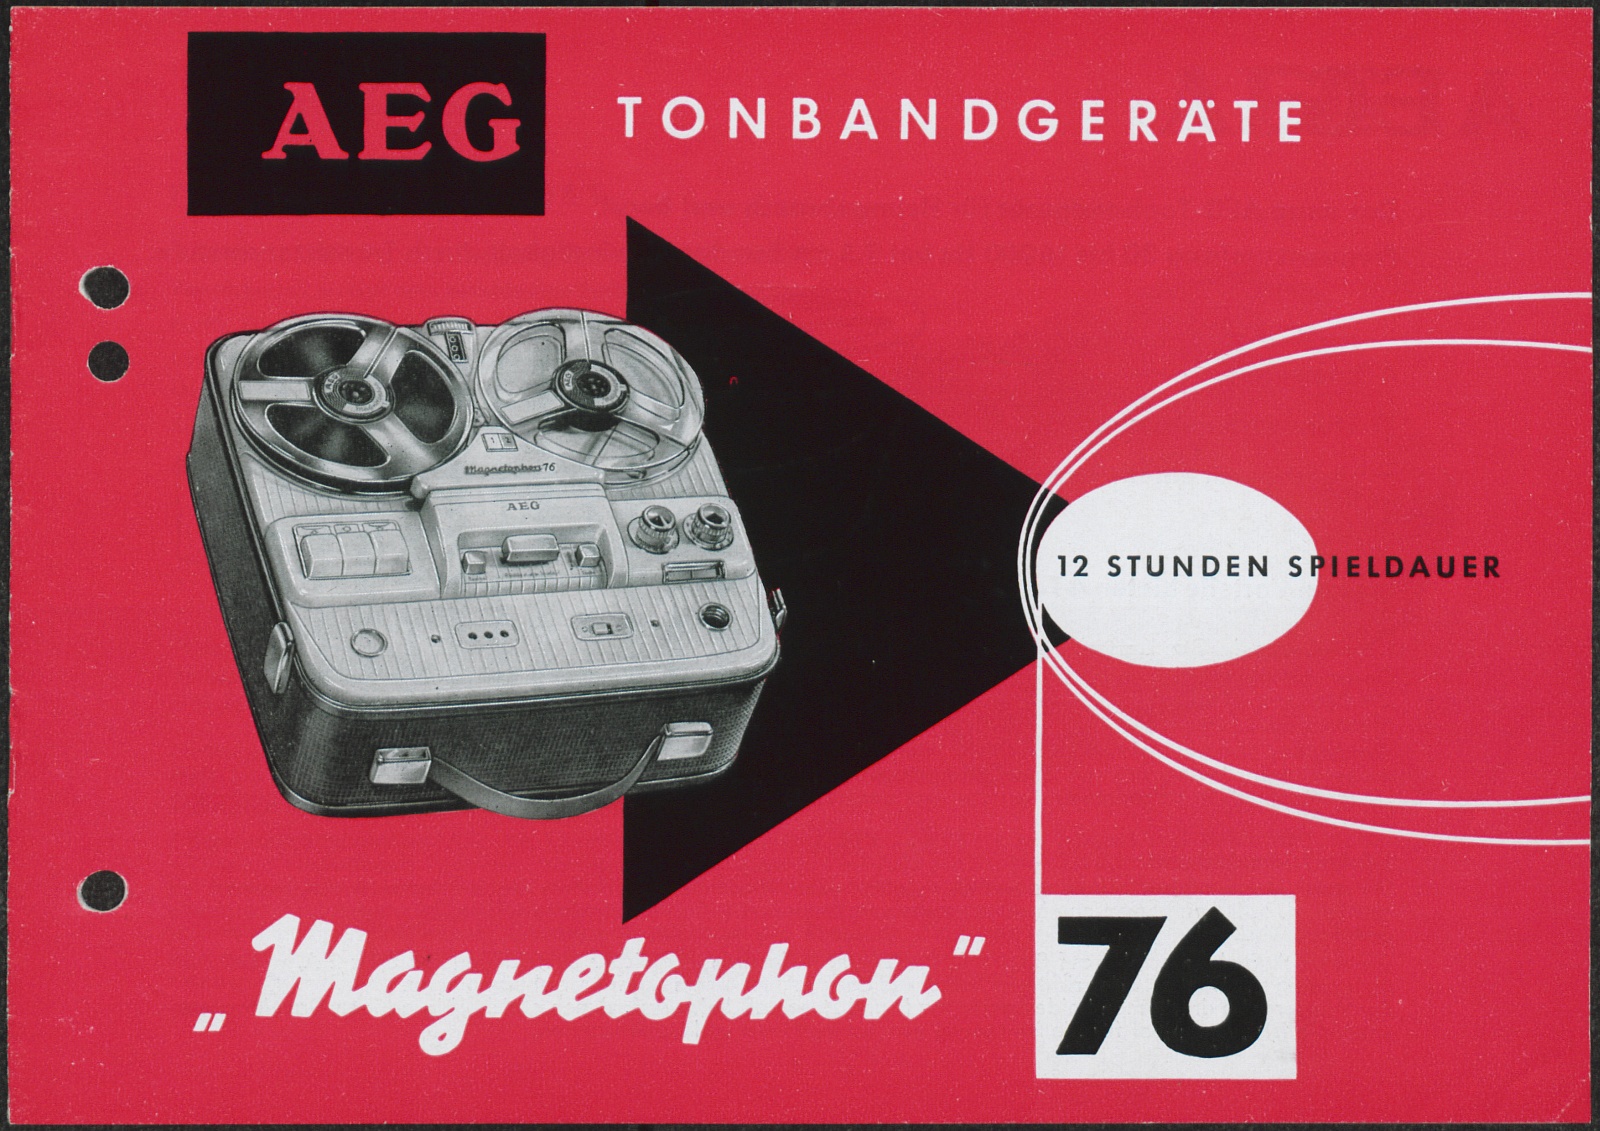 Werbeprospekt: AEG Tonbandgeräte Magnetophon 76; 12 Stunden Spieldauer (Stiftung Deutsches Technikmuseum Berlin CC0)